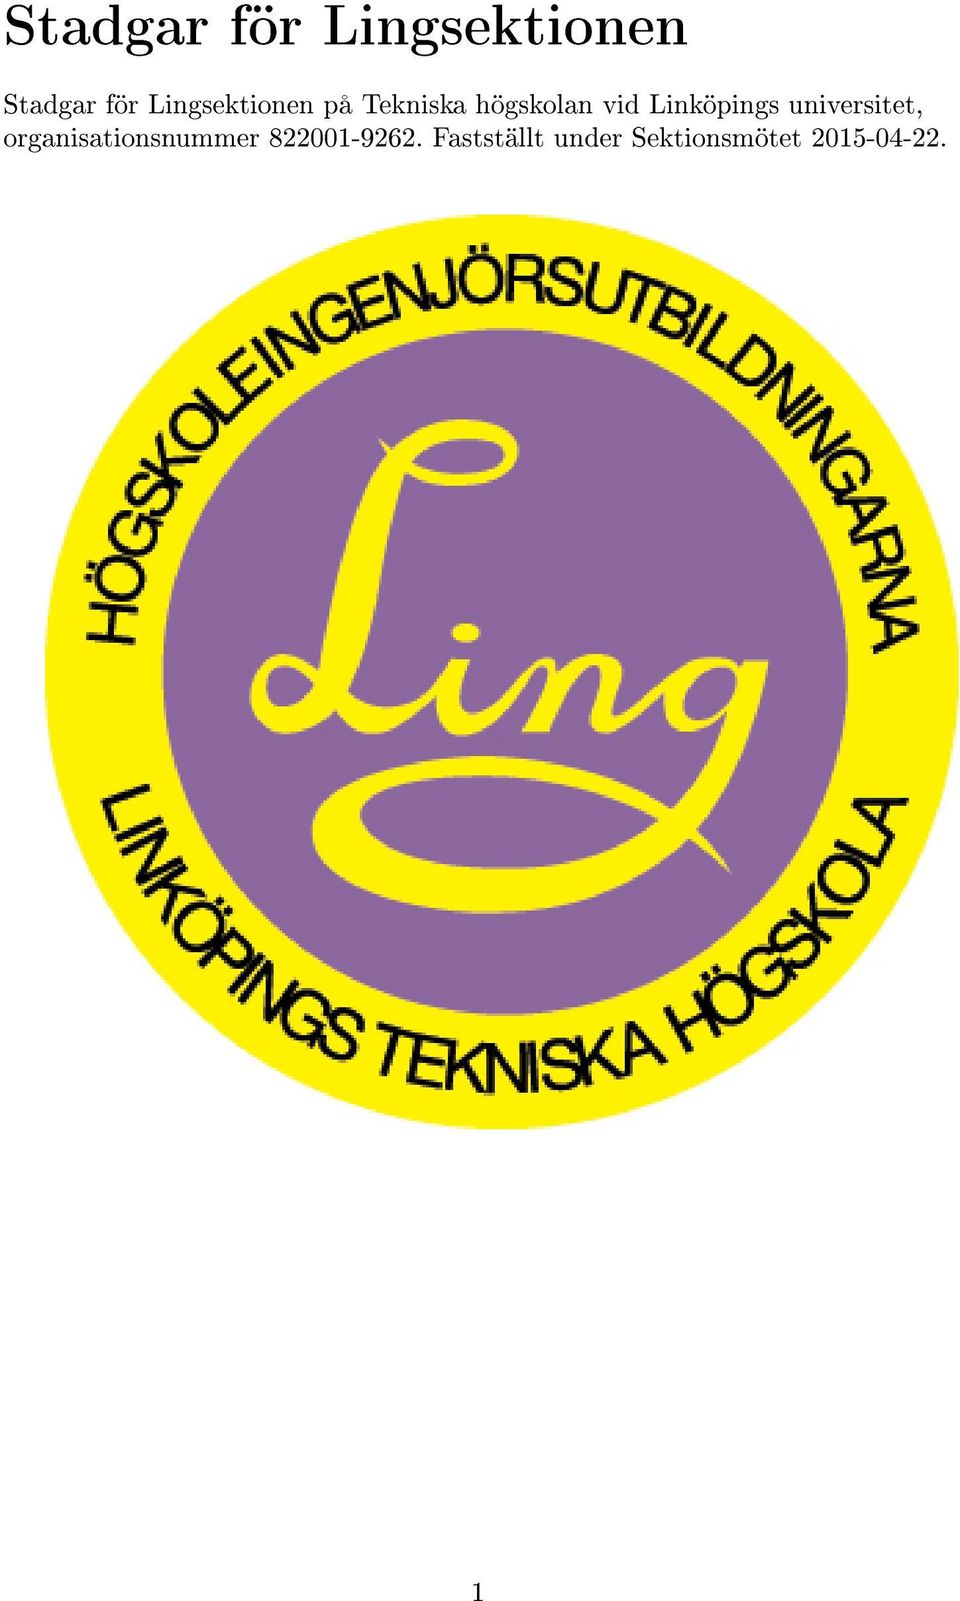 Linköpings universitet, organisationsnummer